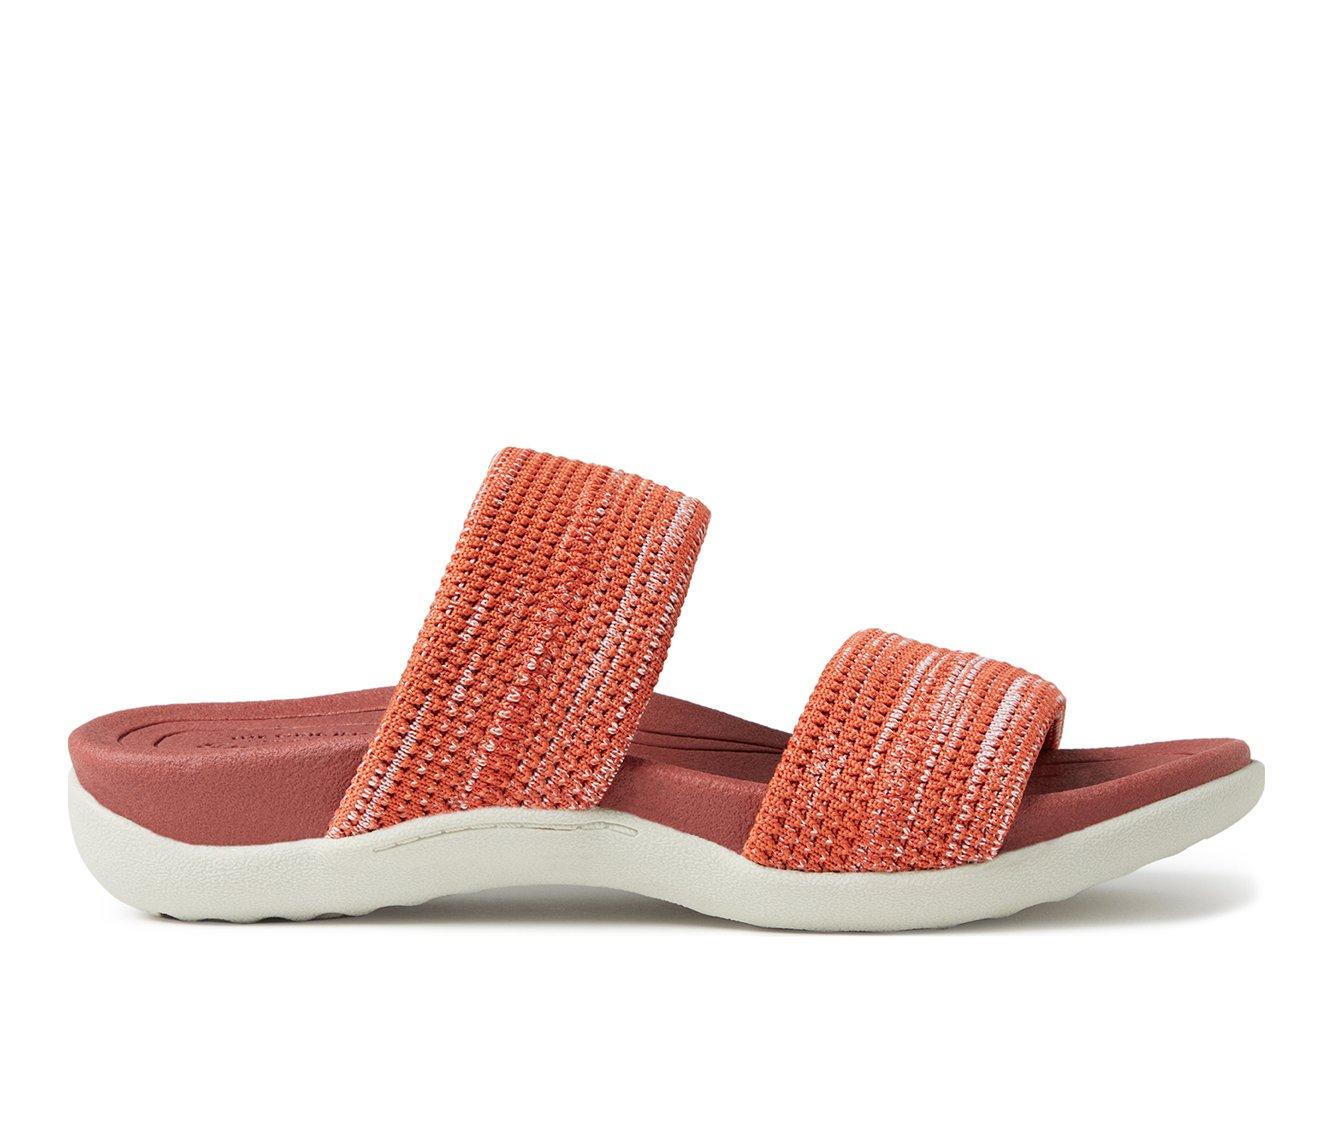 Women's Dearfoams OriginalComfort Low Foam Double Band Sandals